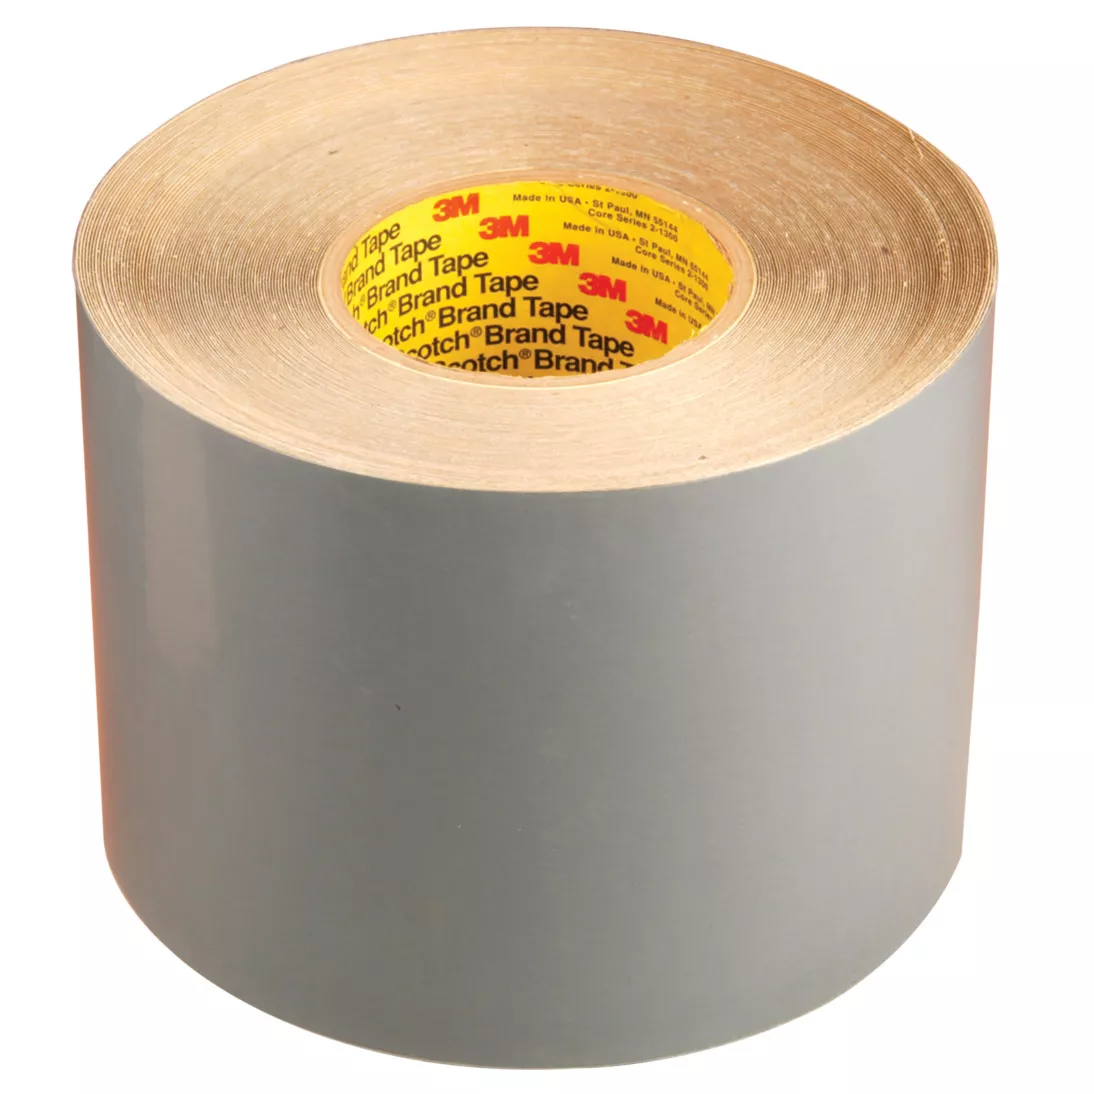 3M™ Flexomount™ Plate Mounting Tape 411DL, Gray, 15 in x 36 yd, 15 mil,
1 roll per case